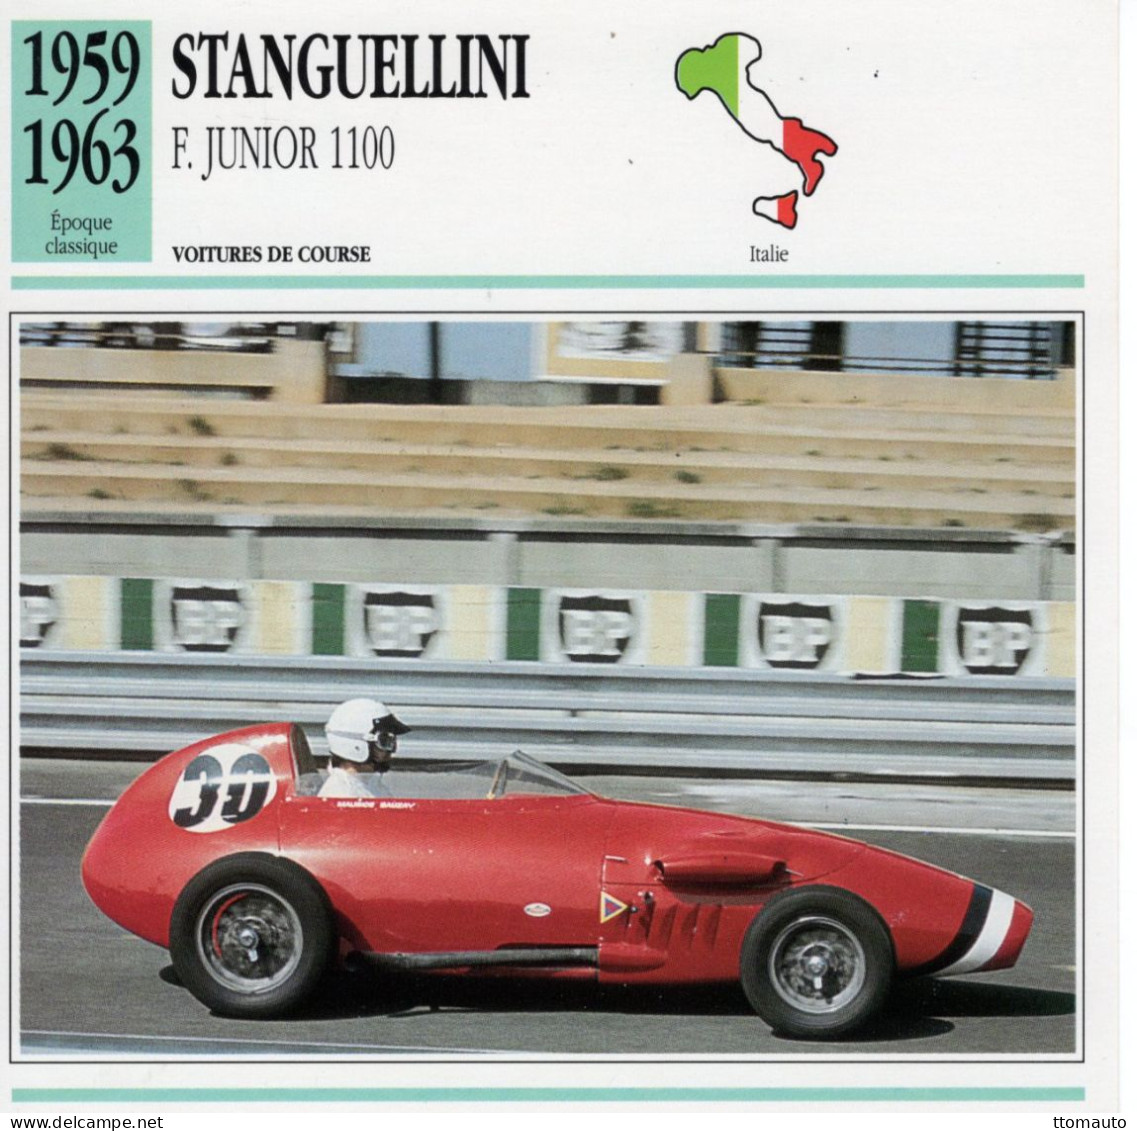 Stanguellini Formula Junior 1100 -  1960  - Voiture De Course -  Fiche Technique Automobile (I) - Voitures